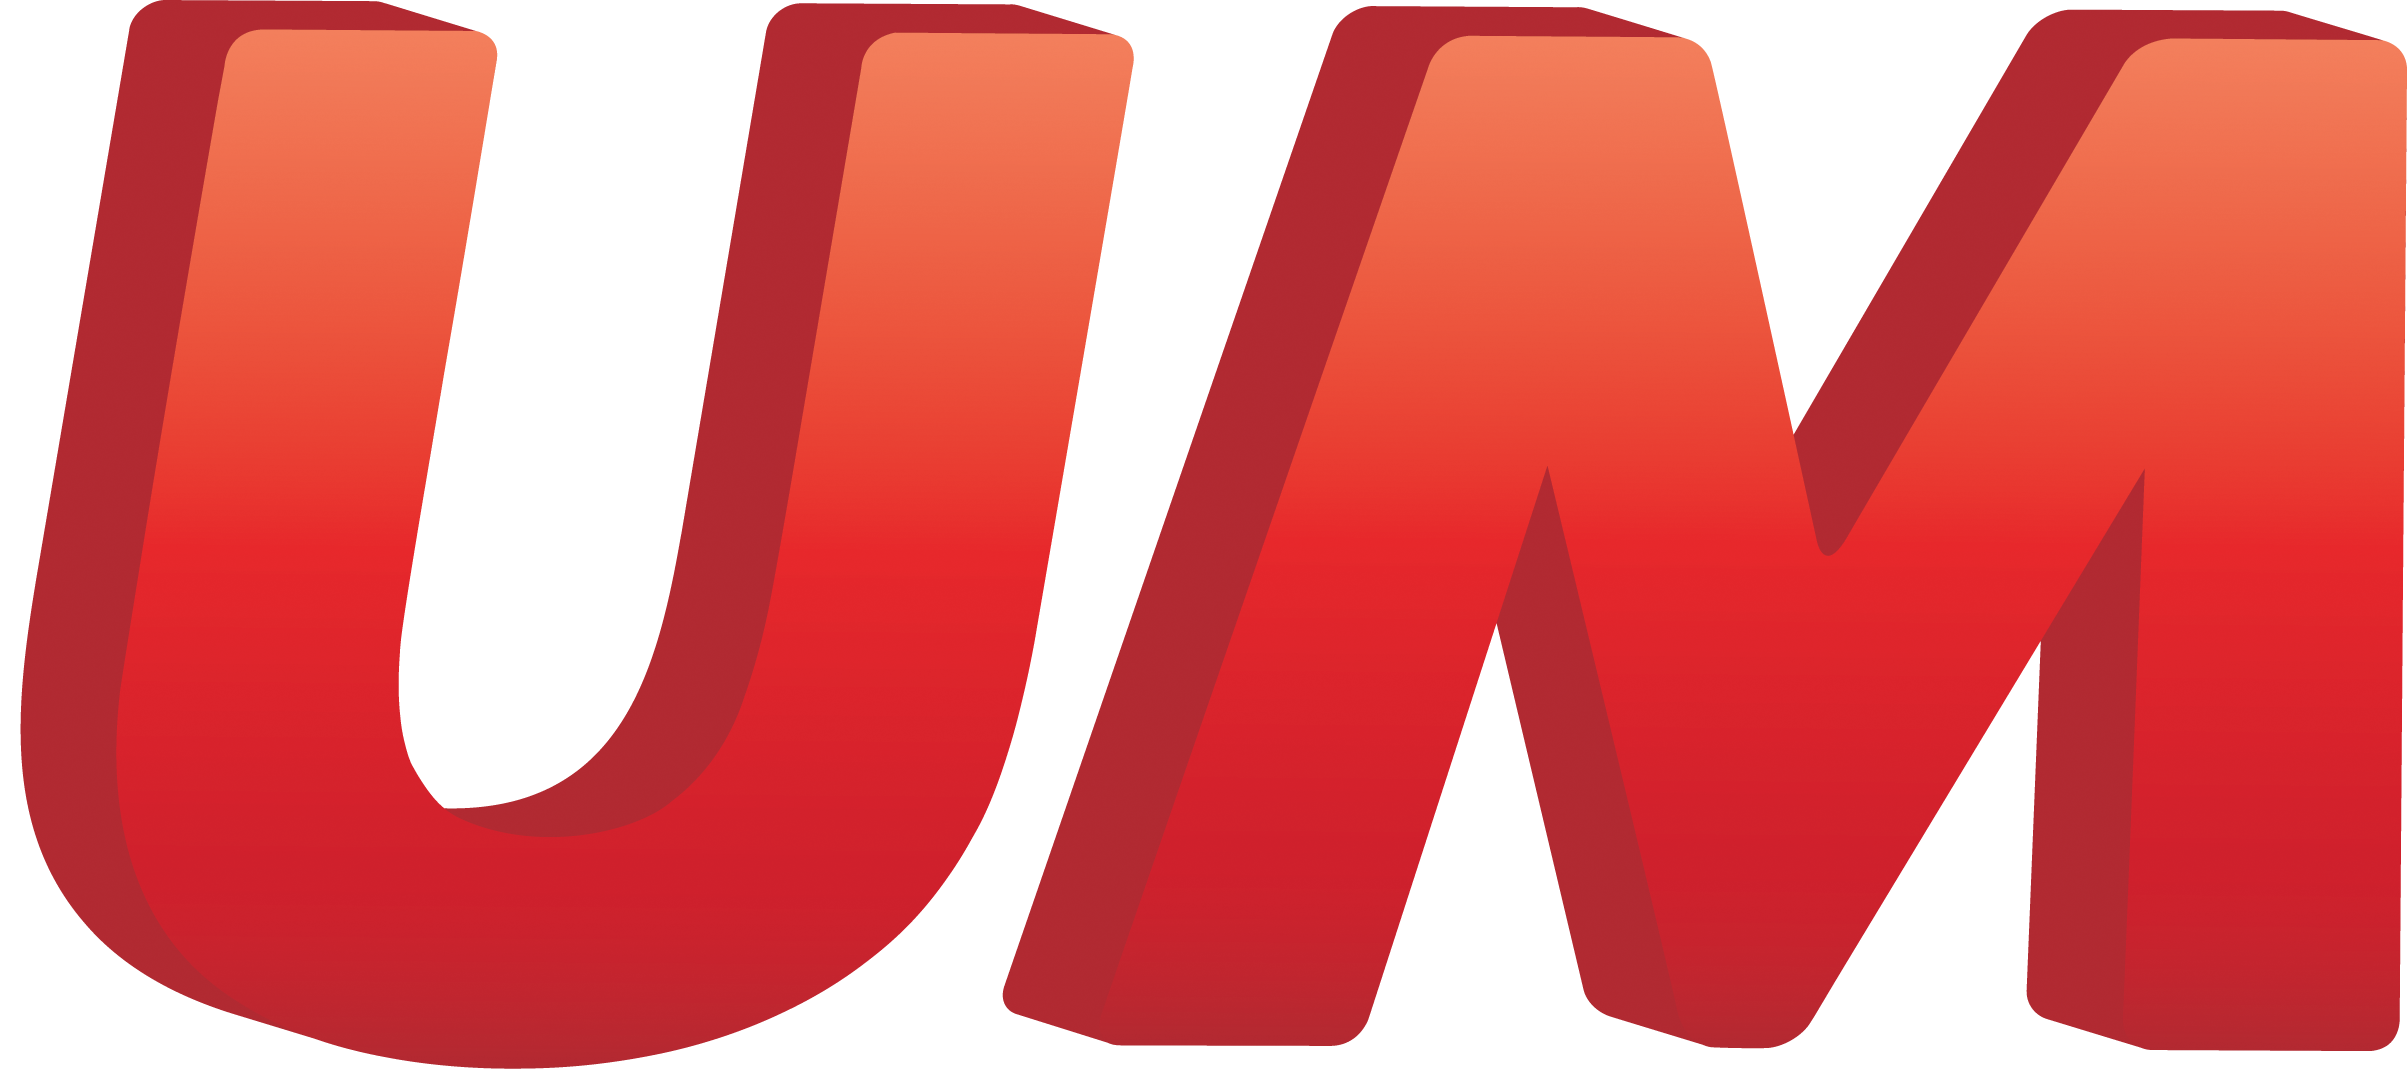 Universal_McCann_logo.png